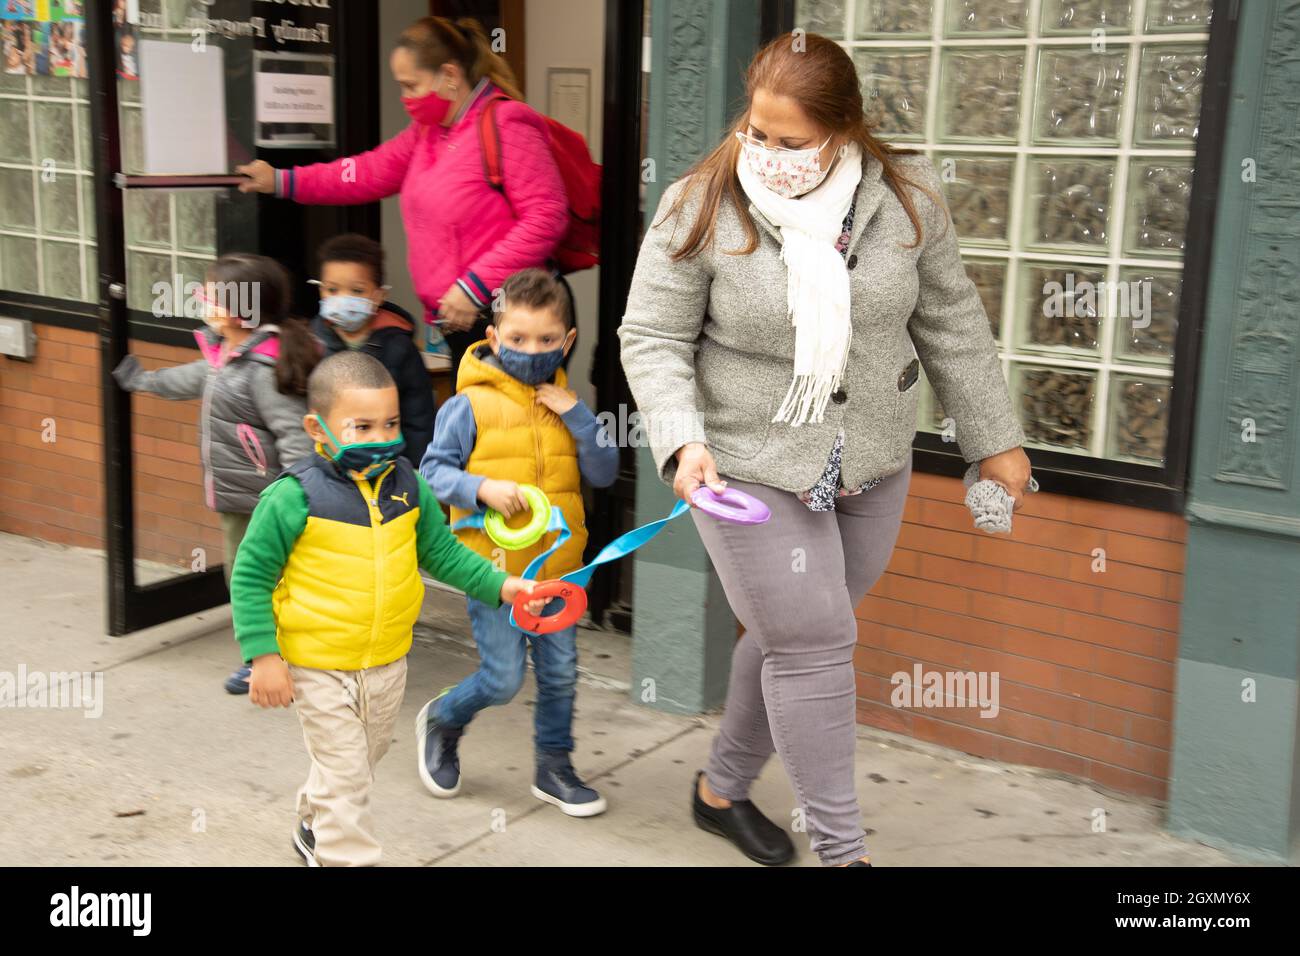 Educación Preescolar grupo de 3 años de edad que sale para caminar con las maestras femeninas, usando máscaras faciales, sujetando sobre anillos en la cuerda para permanecer juntos Foto de stock